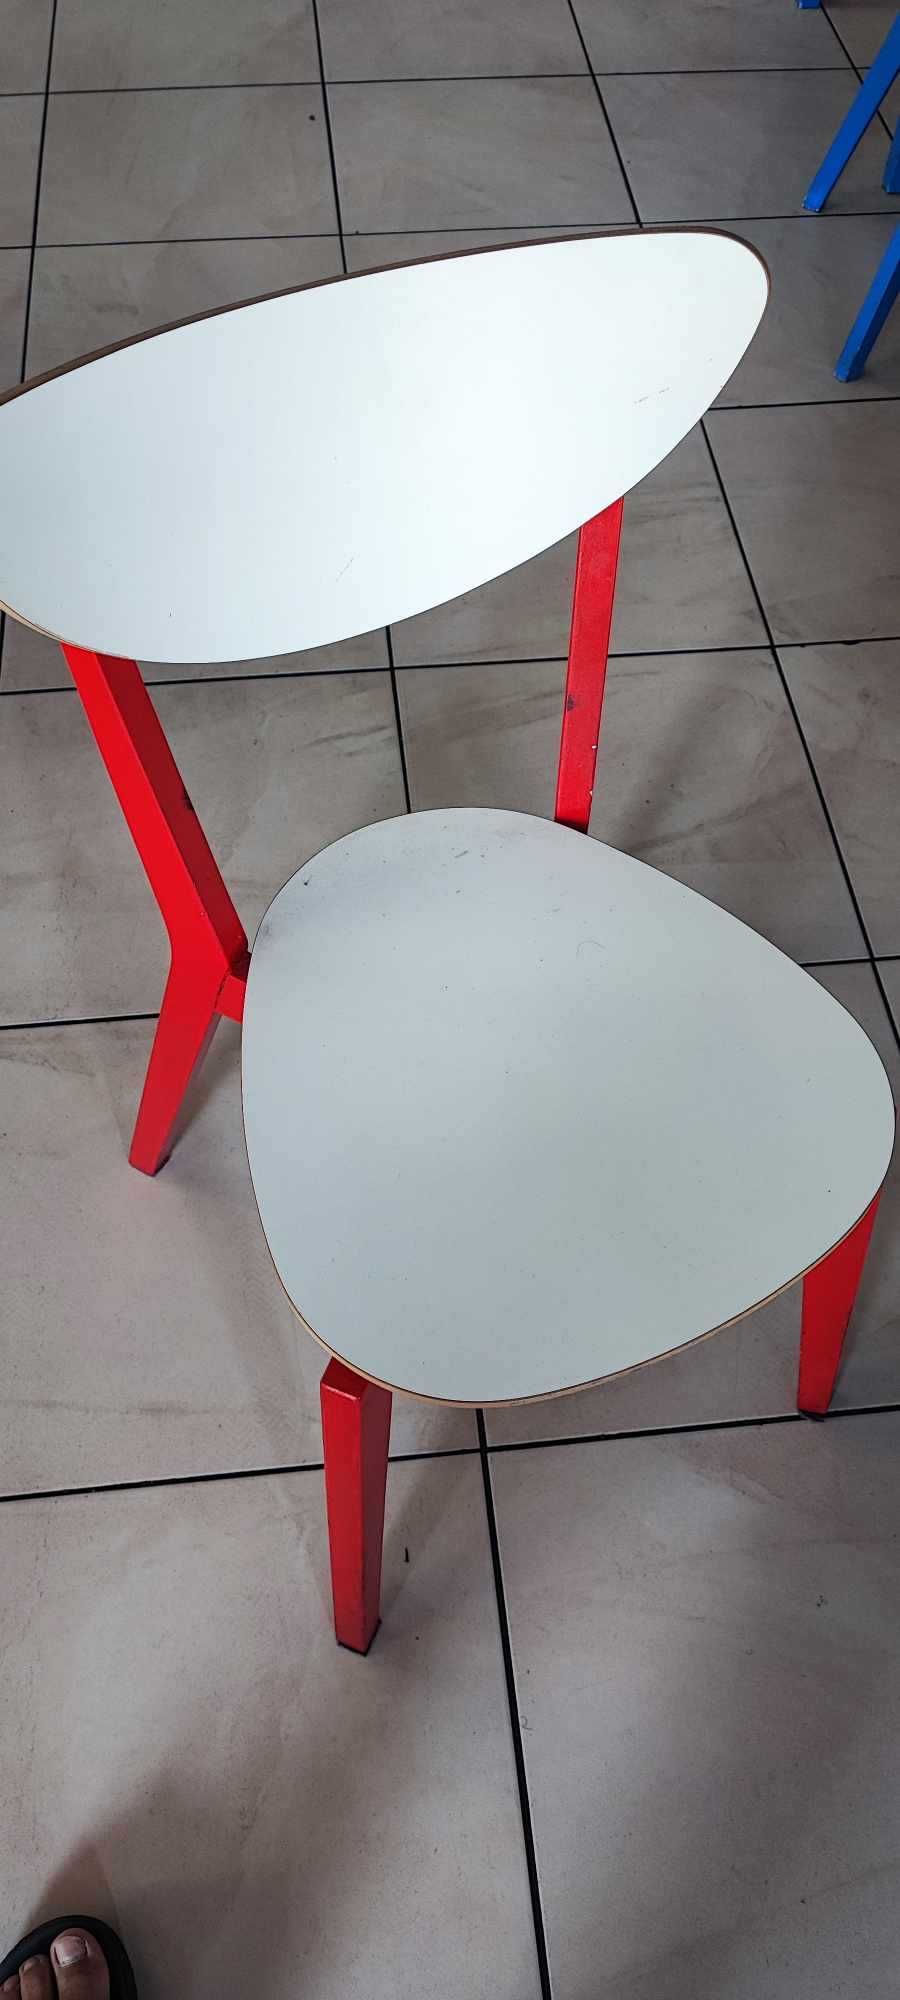 Krzesło Ikea używane kolor czerwony i niebieski